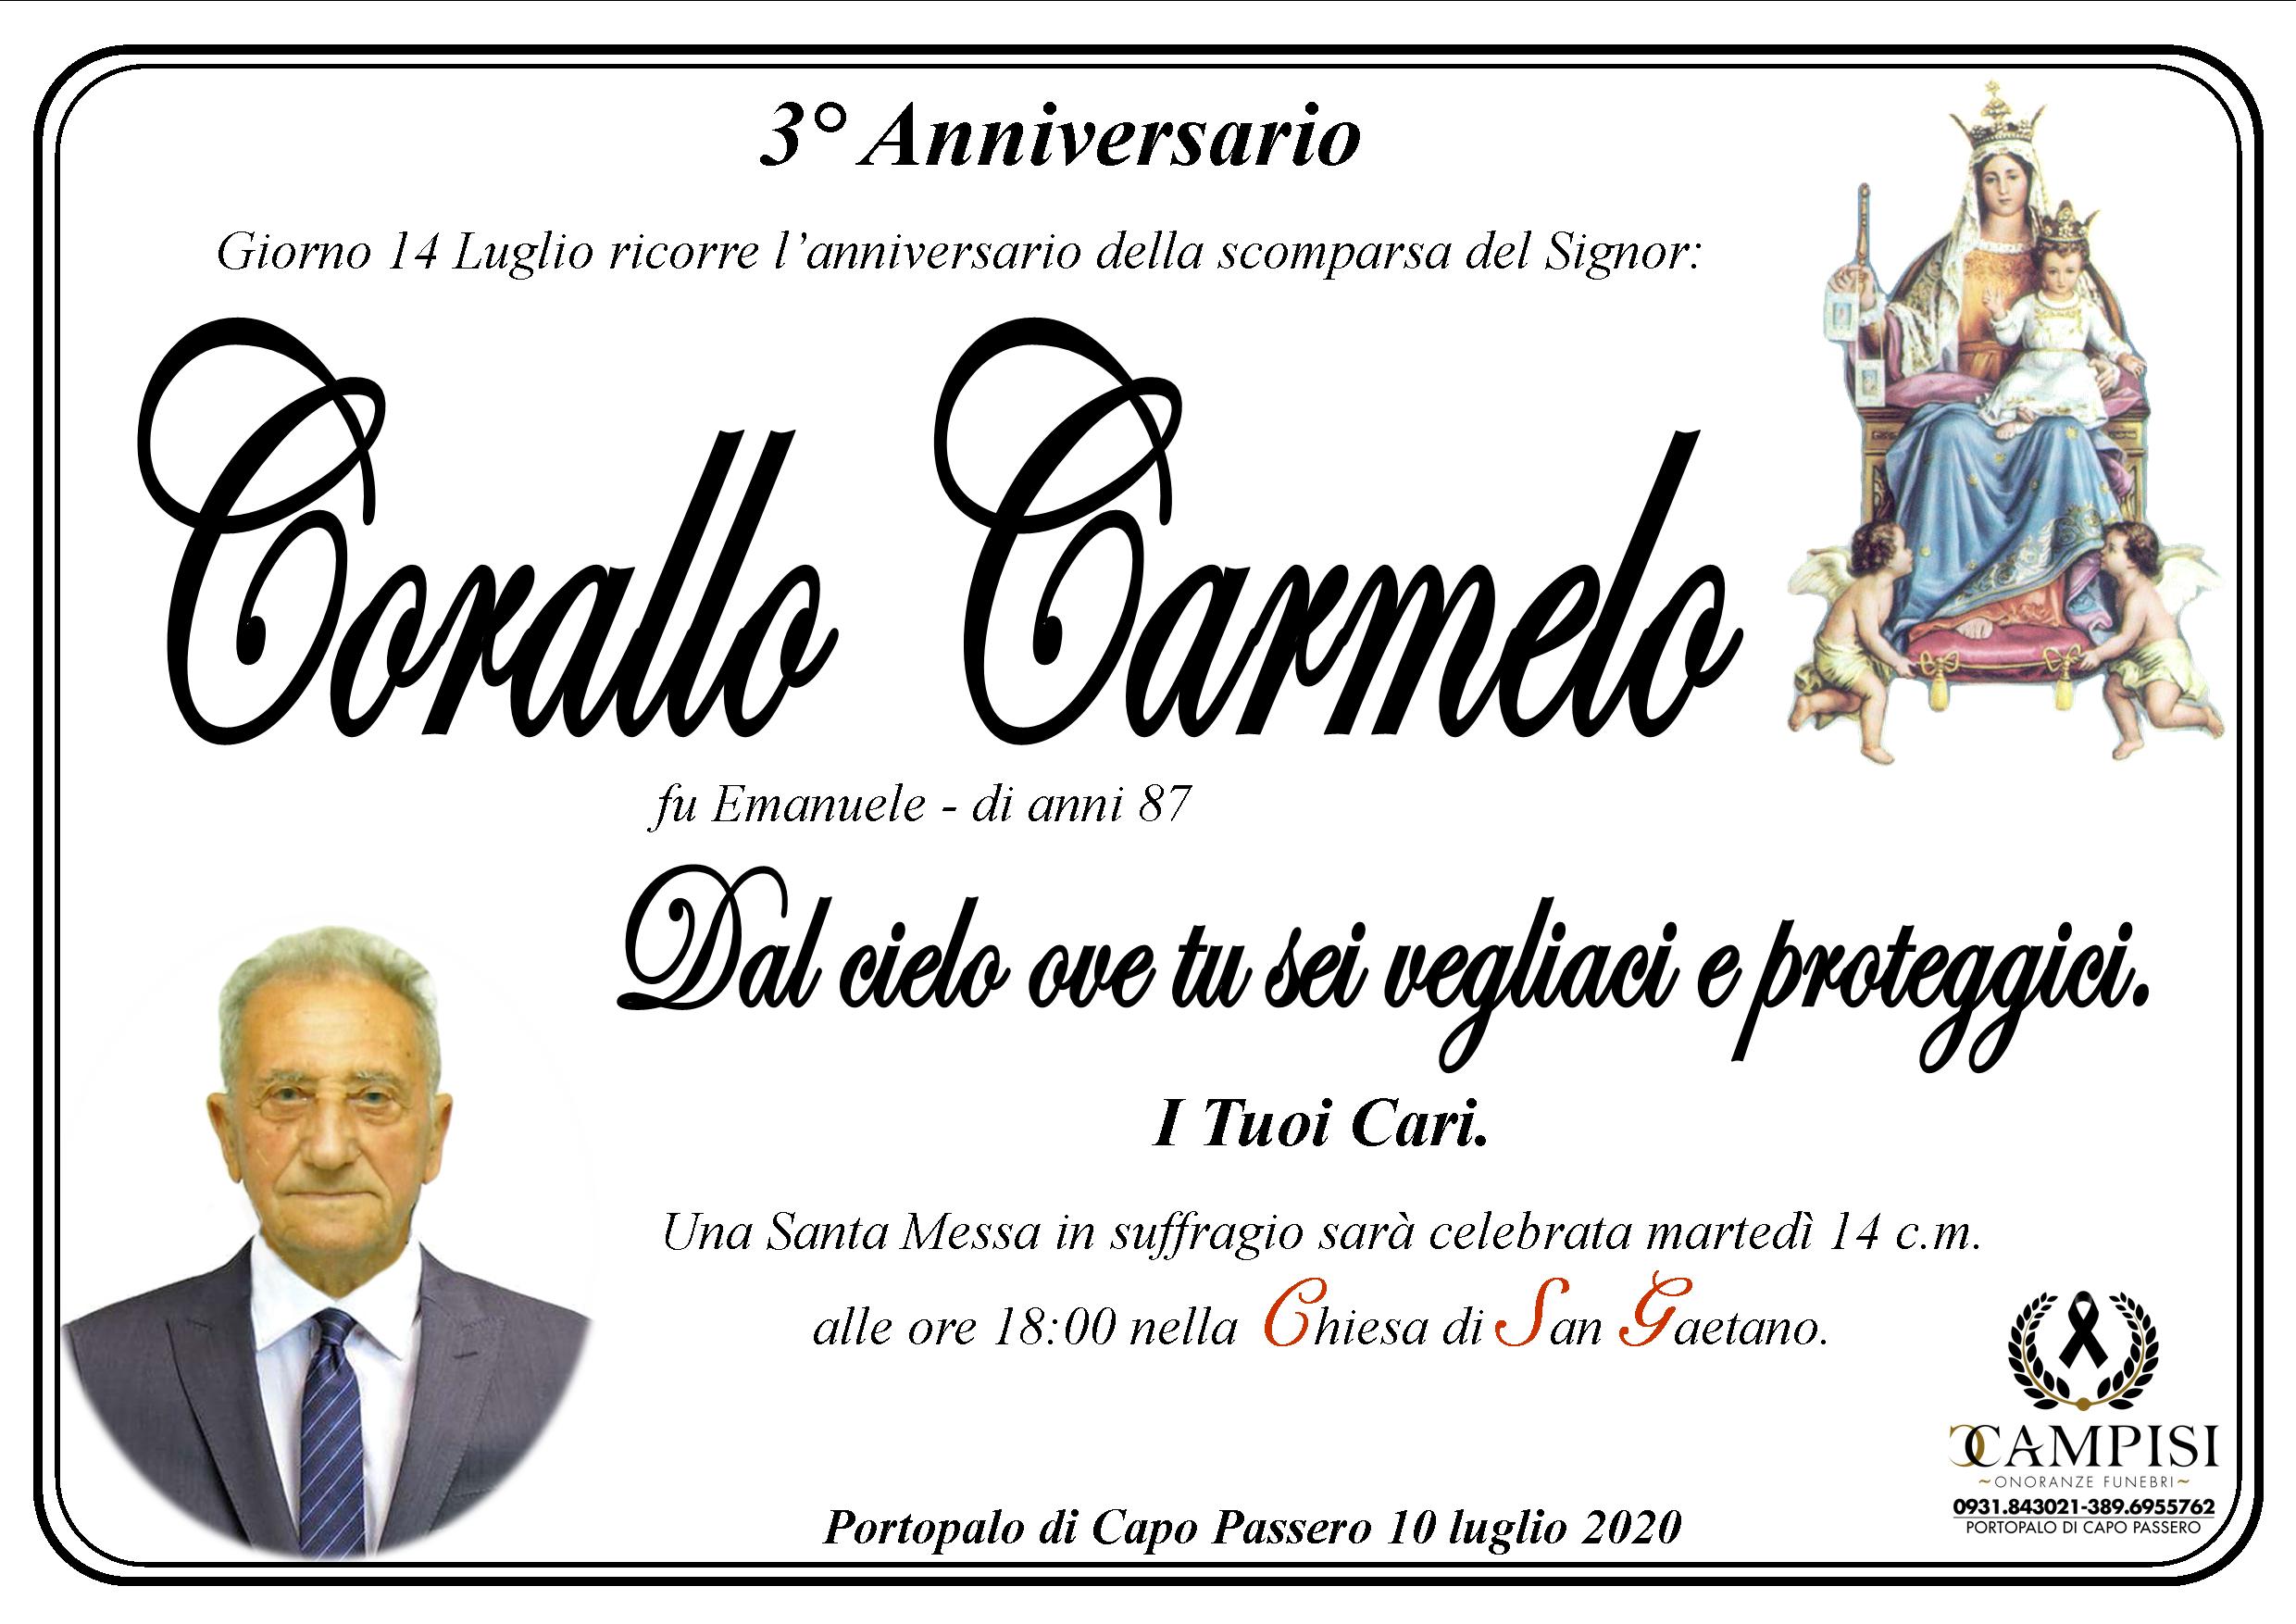 Corallo Carmelo